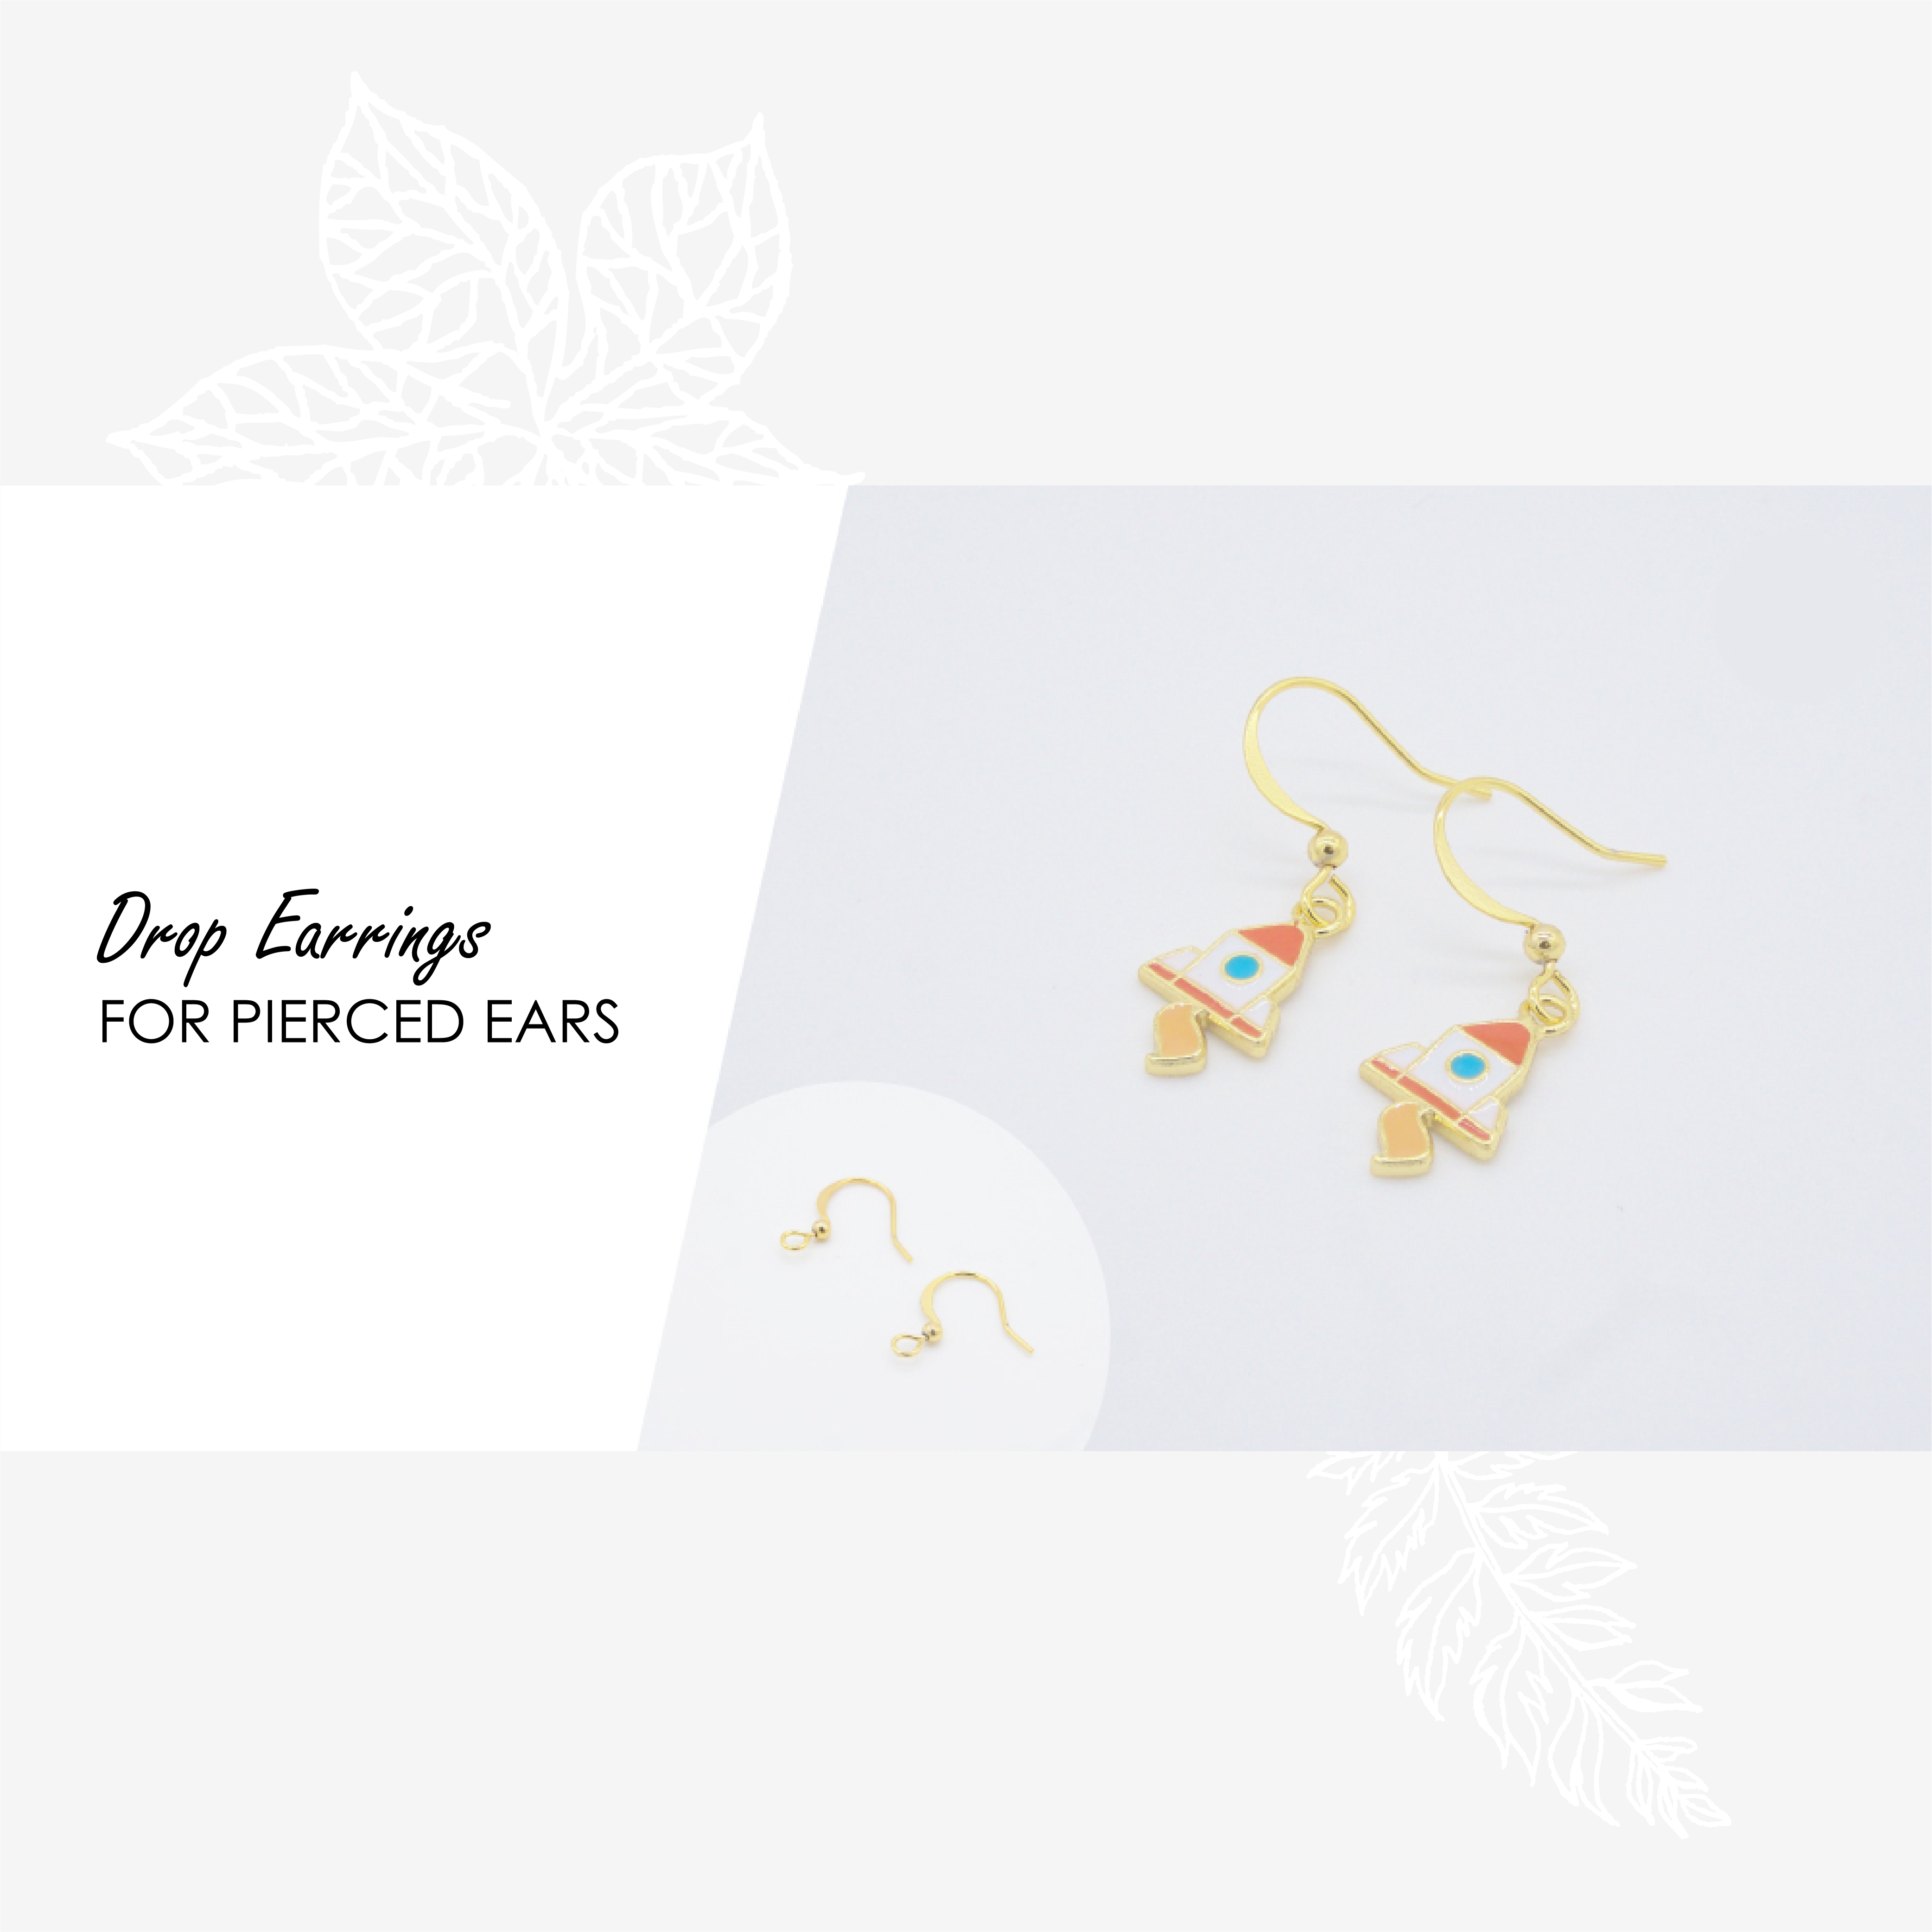 Ladybug Enamel Earrings/ Bracelet/ Necklace